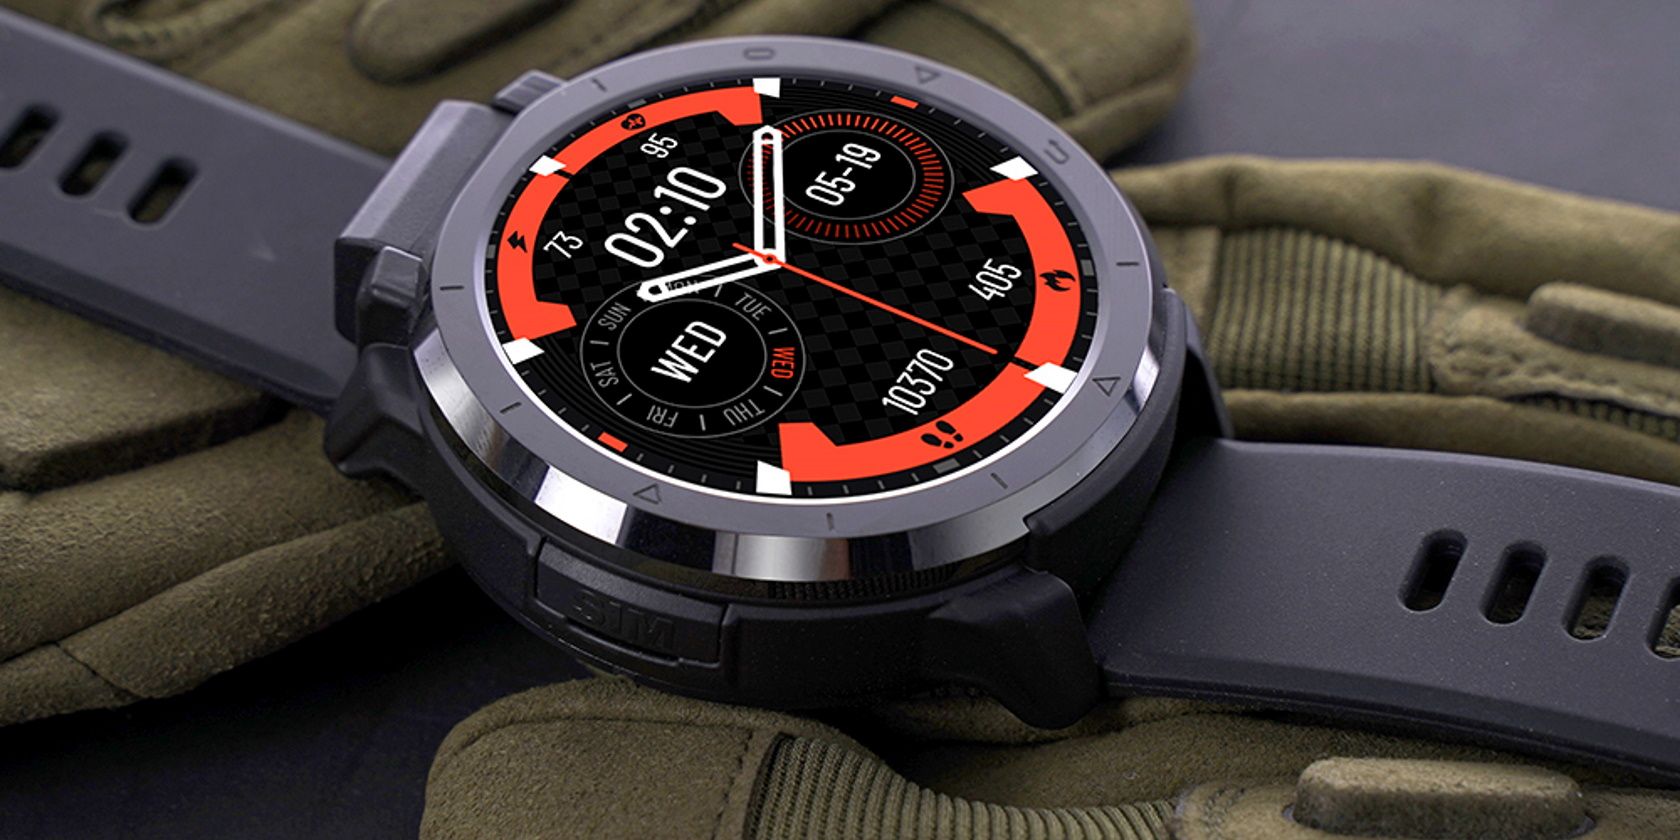 OPTIMUS 2 smartwatch